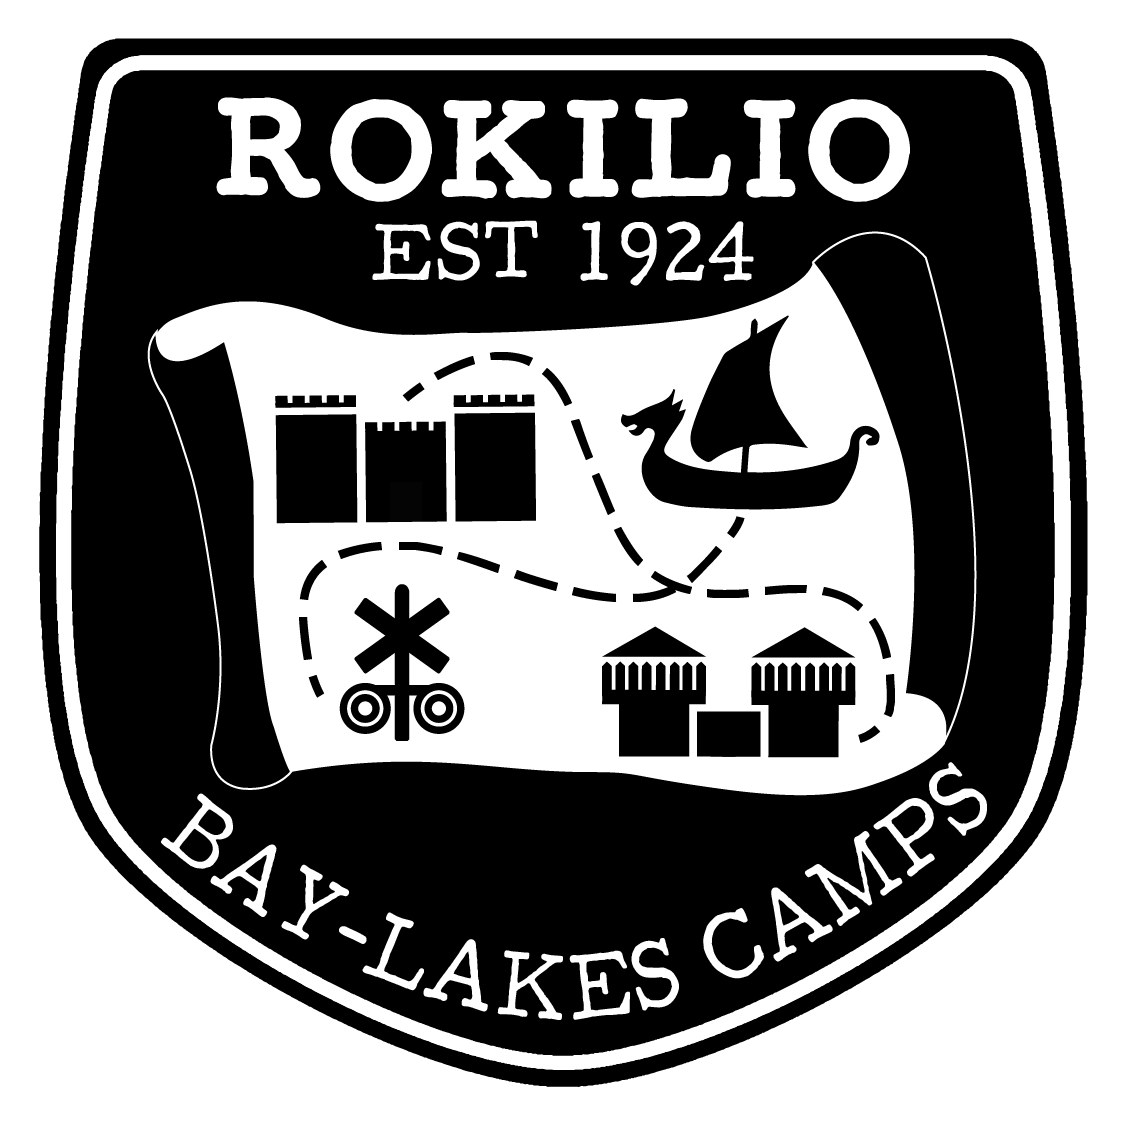 Camp Rokilio